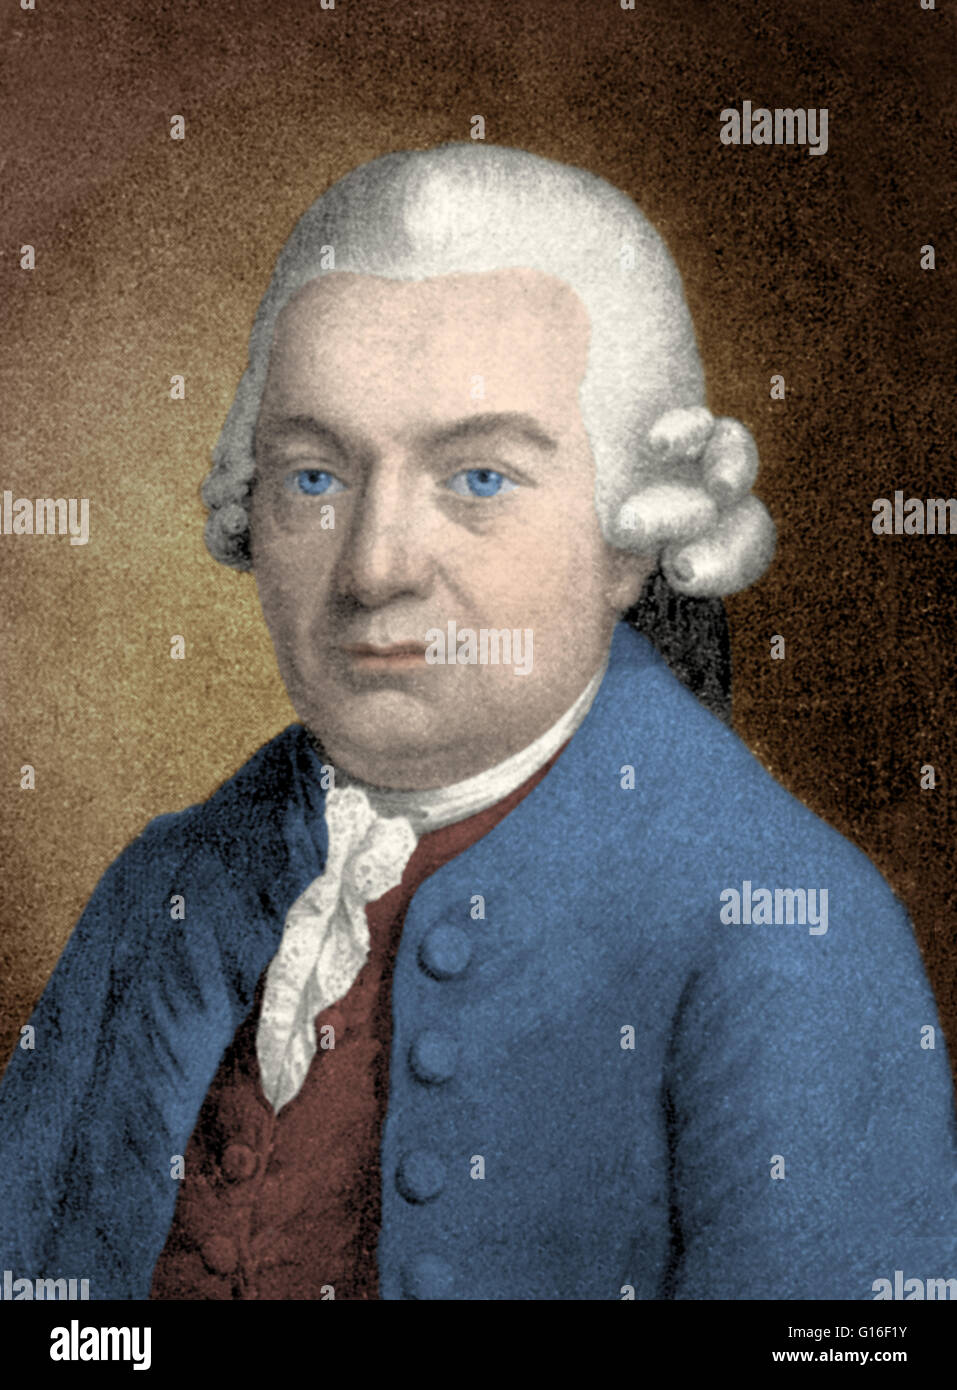 Carl Philipp Emanuel Bach (8 de marzo de 1714 - 14 de diciembre de 1788) fue un periodo clásico alemán músico y compositor, el quinto hijo y segundo (sobreviviendo) hijo de Johann Sebastian Bach y Maria Barbara Bach. C. P. E. Bach fue un influyente compositor workin Foto de stock